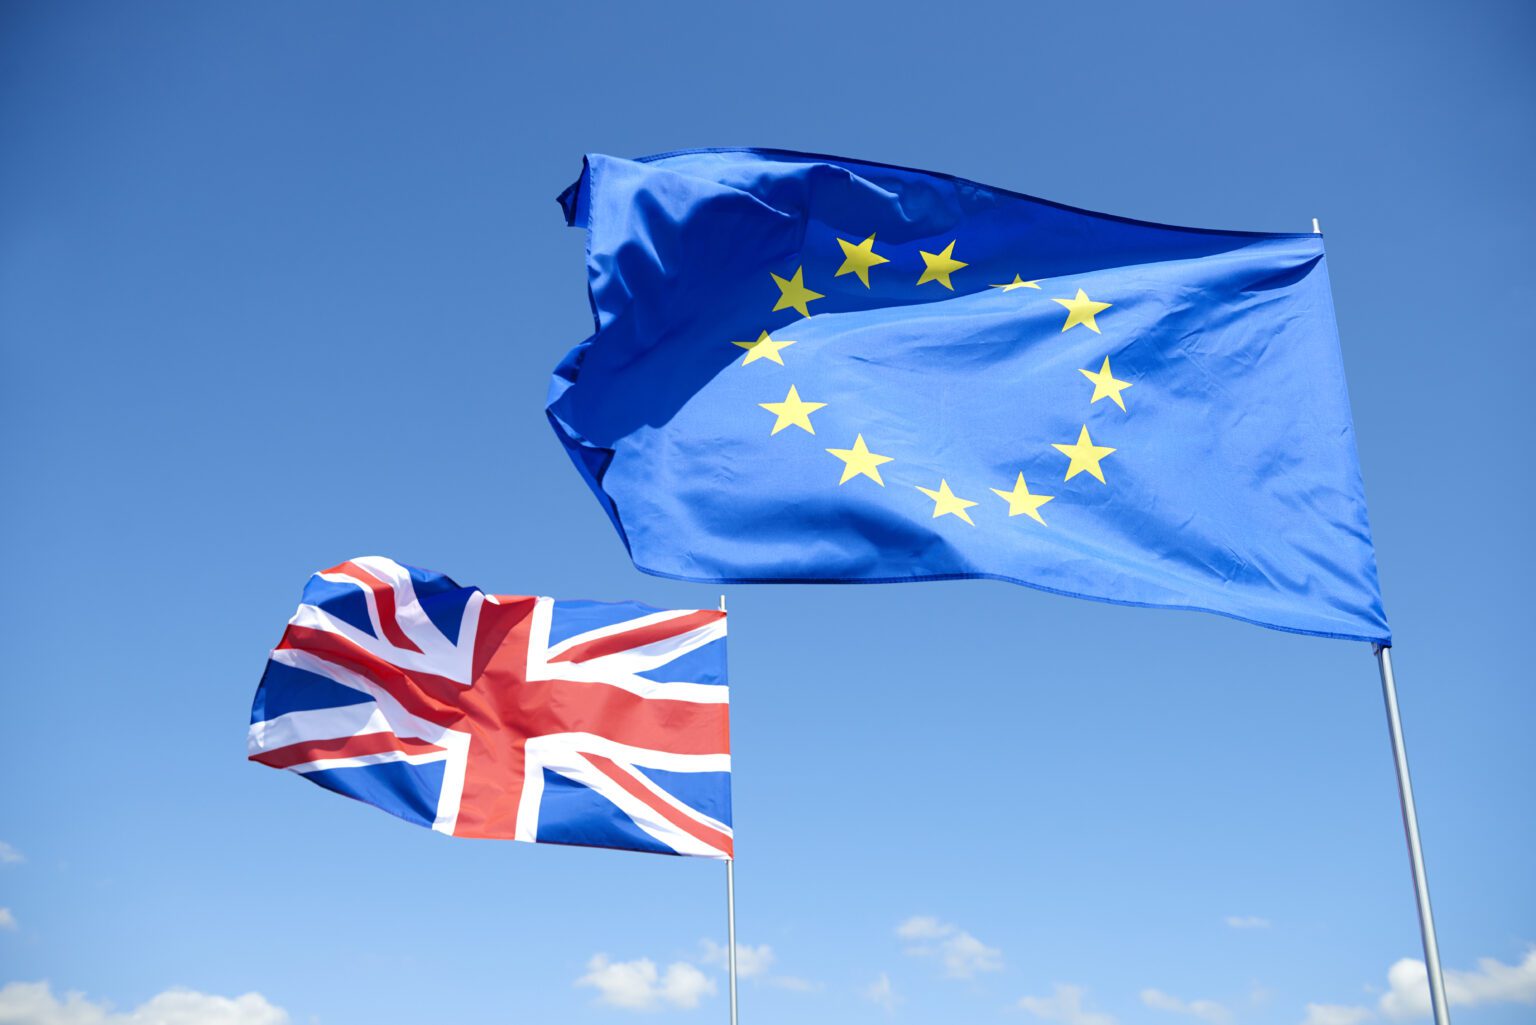 drapeau de la grande bretagne à côté de celui de l'union européenne